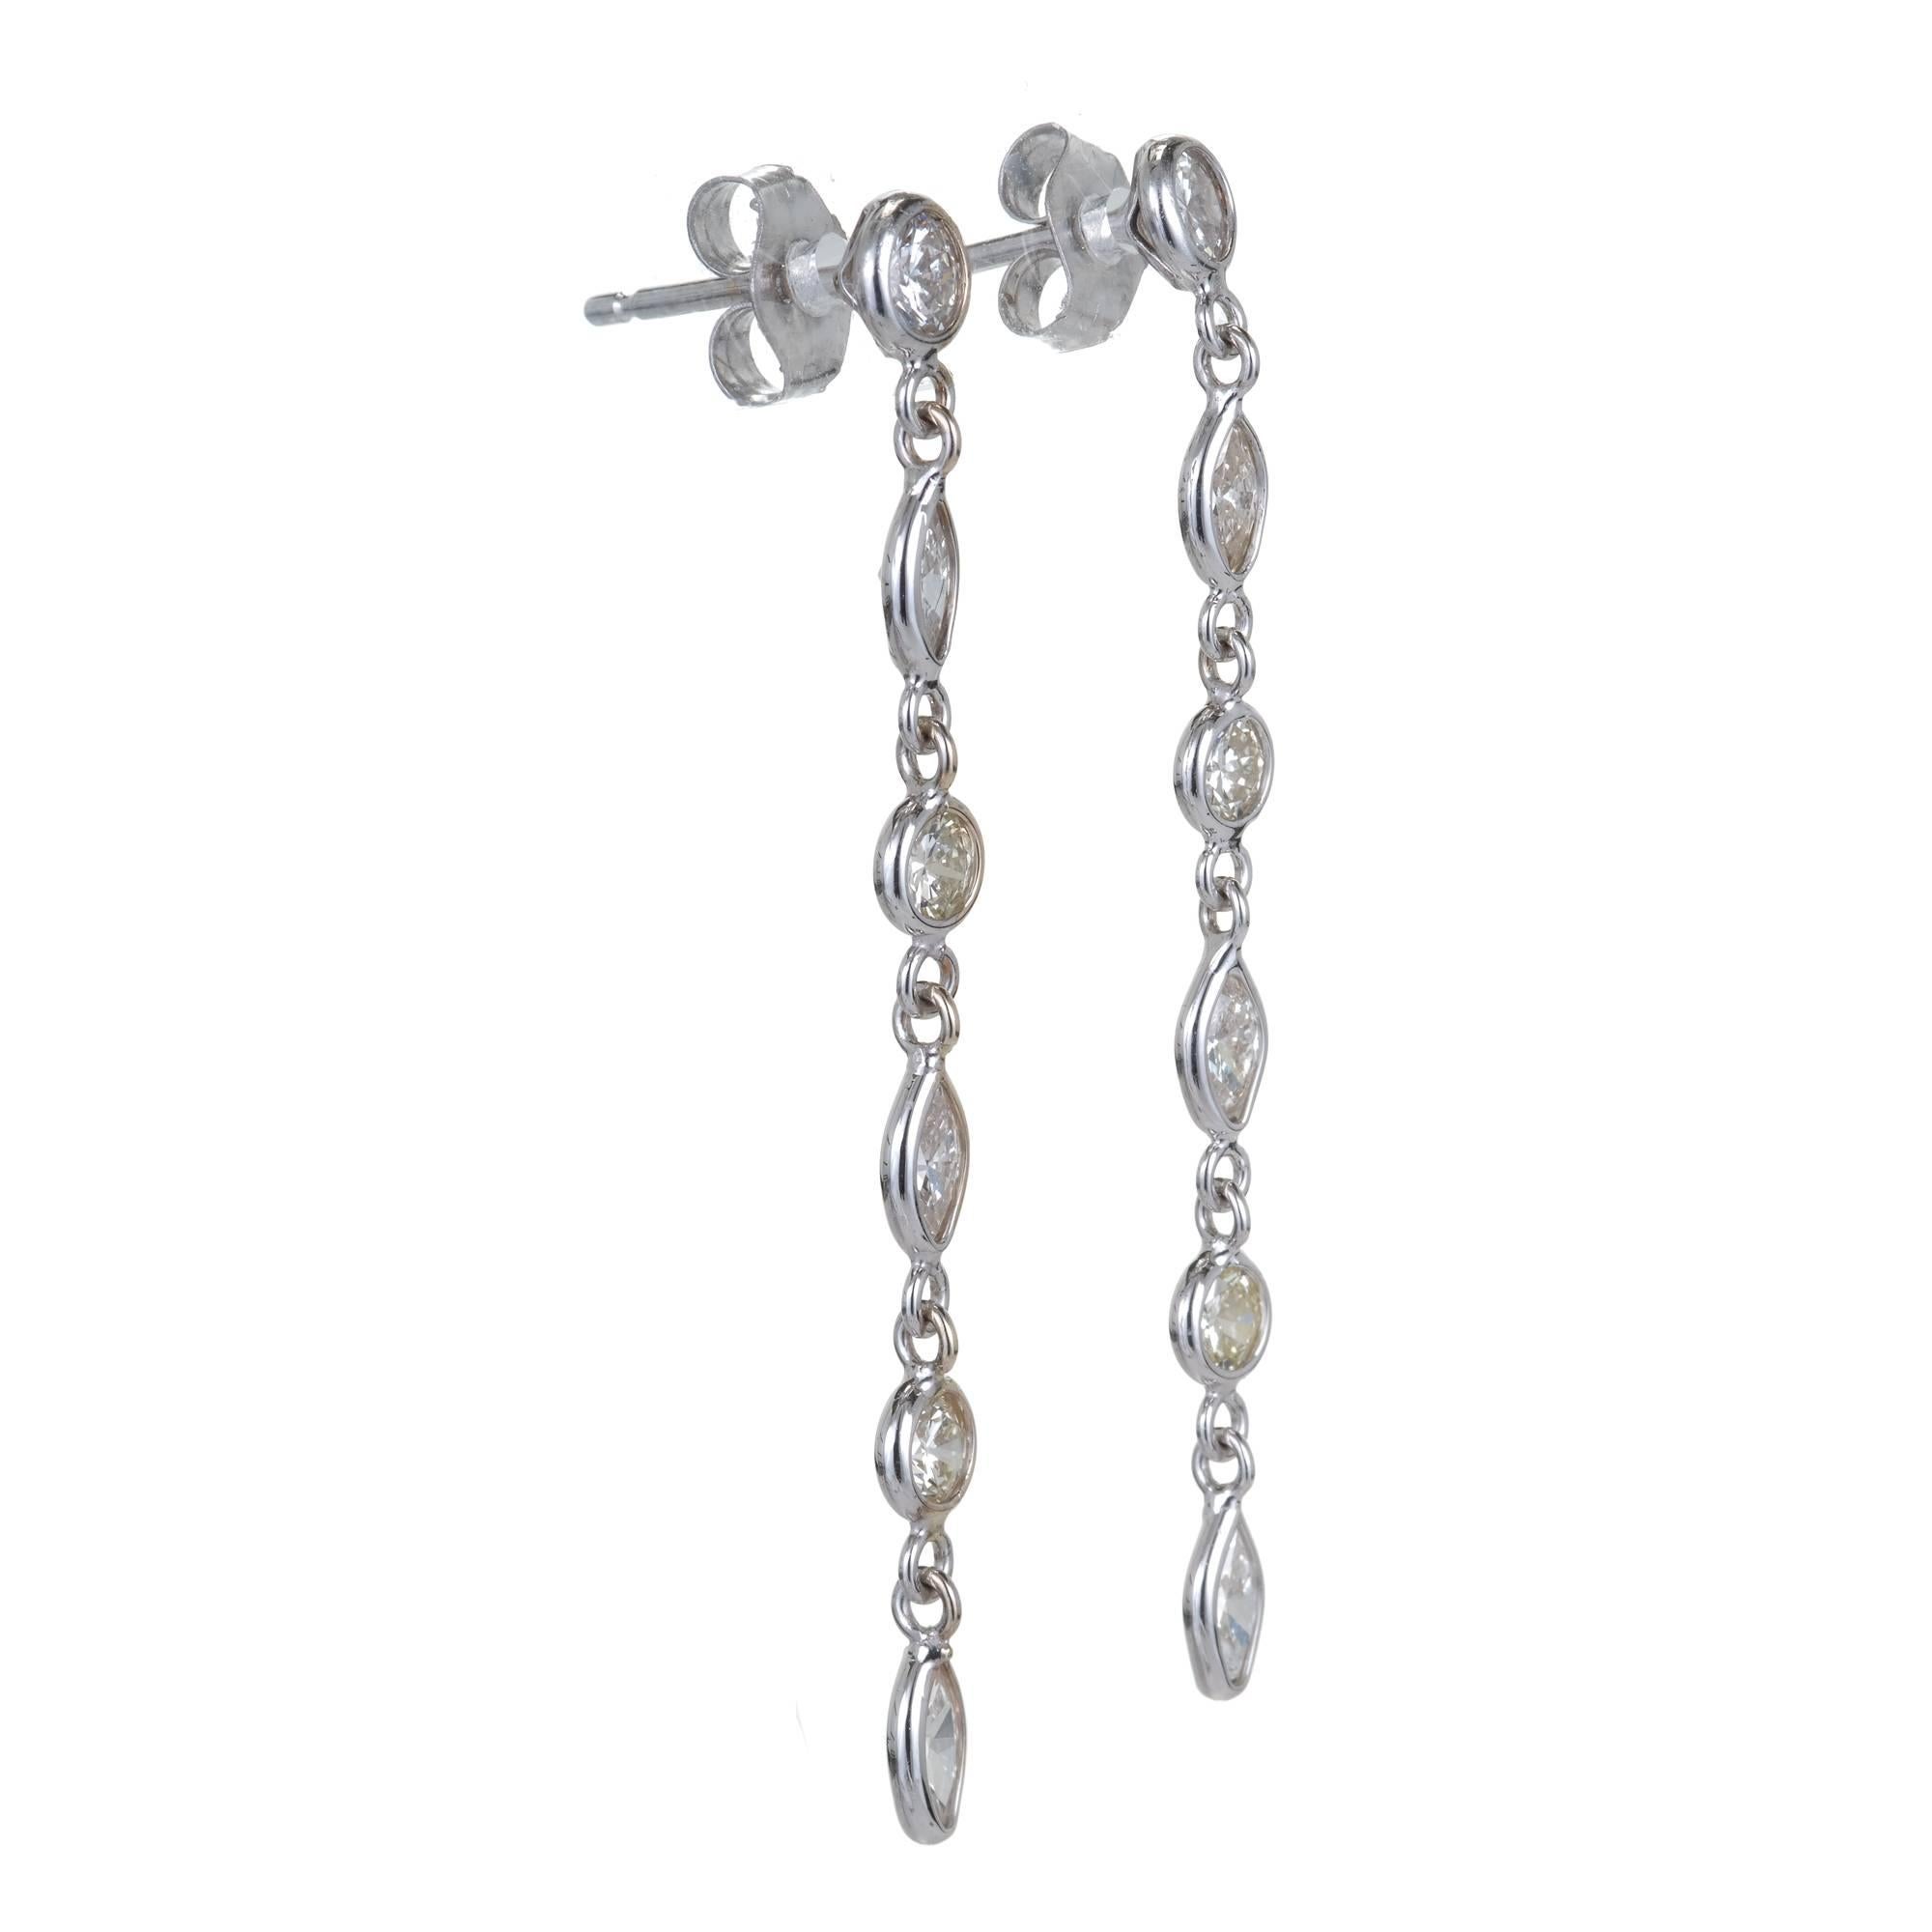 Boucles d'oreilles pendantes en or blanc 14k faites à la main avec des diamants étincelants. Ces boucles d'oreilles proviennent de l'atelier Peter Suchy. Or massif avec chaîne en câble de 1,4 mm et anneaux de diamants façonnés à la main pour mettre